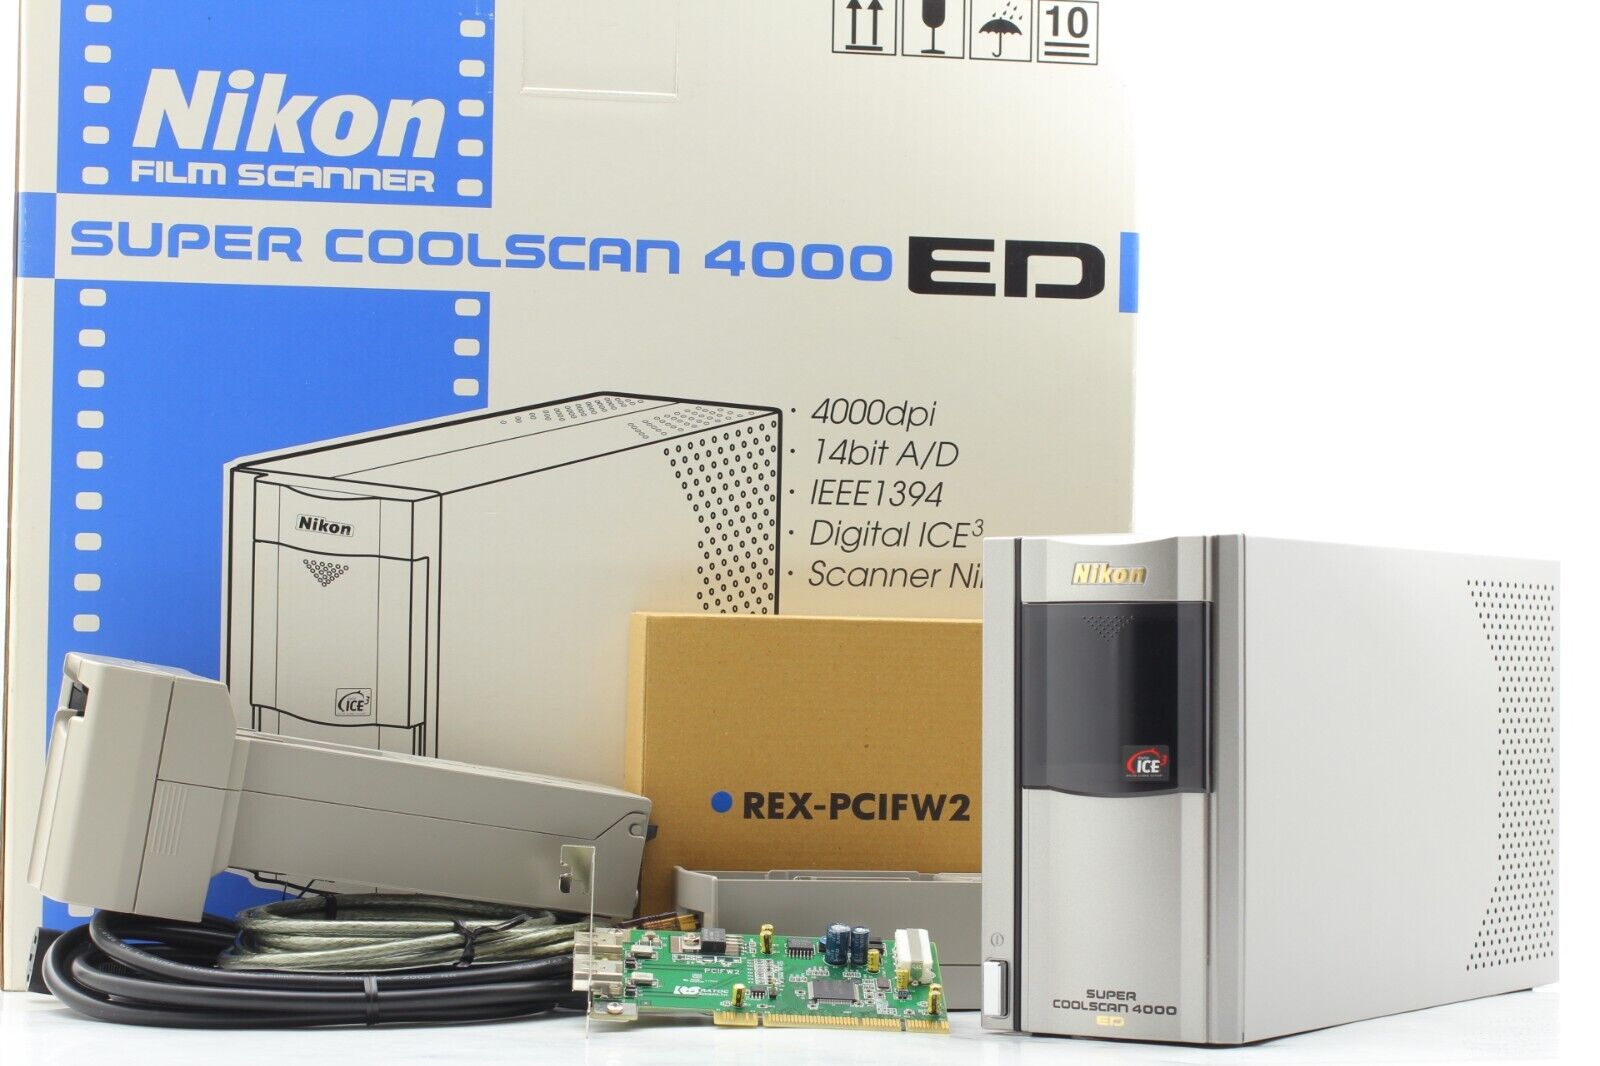 【Almost Unused】 Nikon Super CoolScan LS-4000 ED + MA-21 SA-21 Film Scanner JAPAN